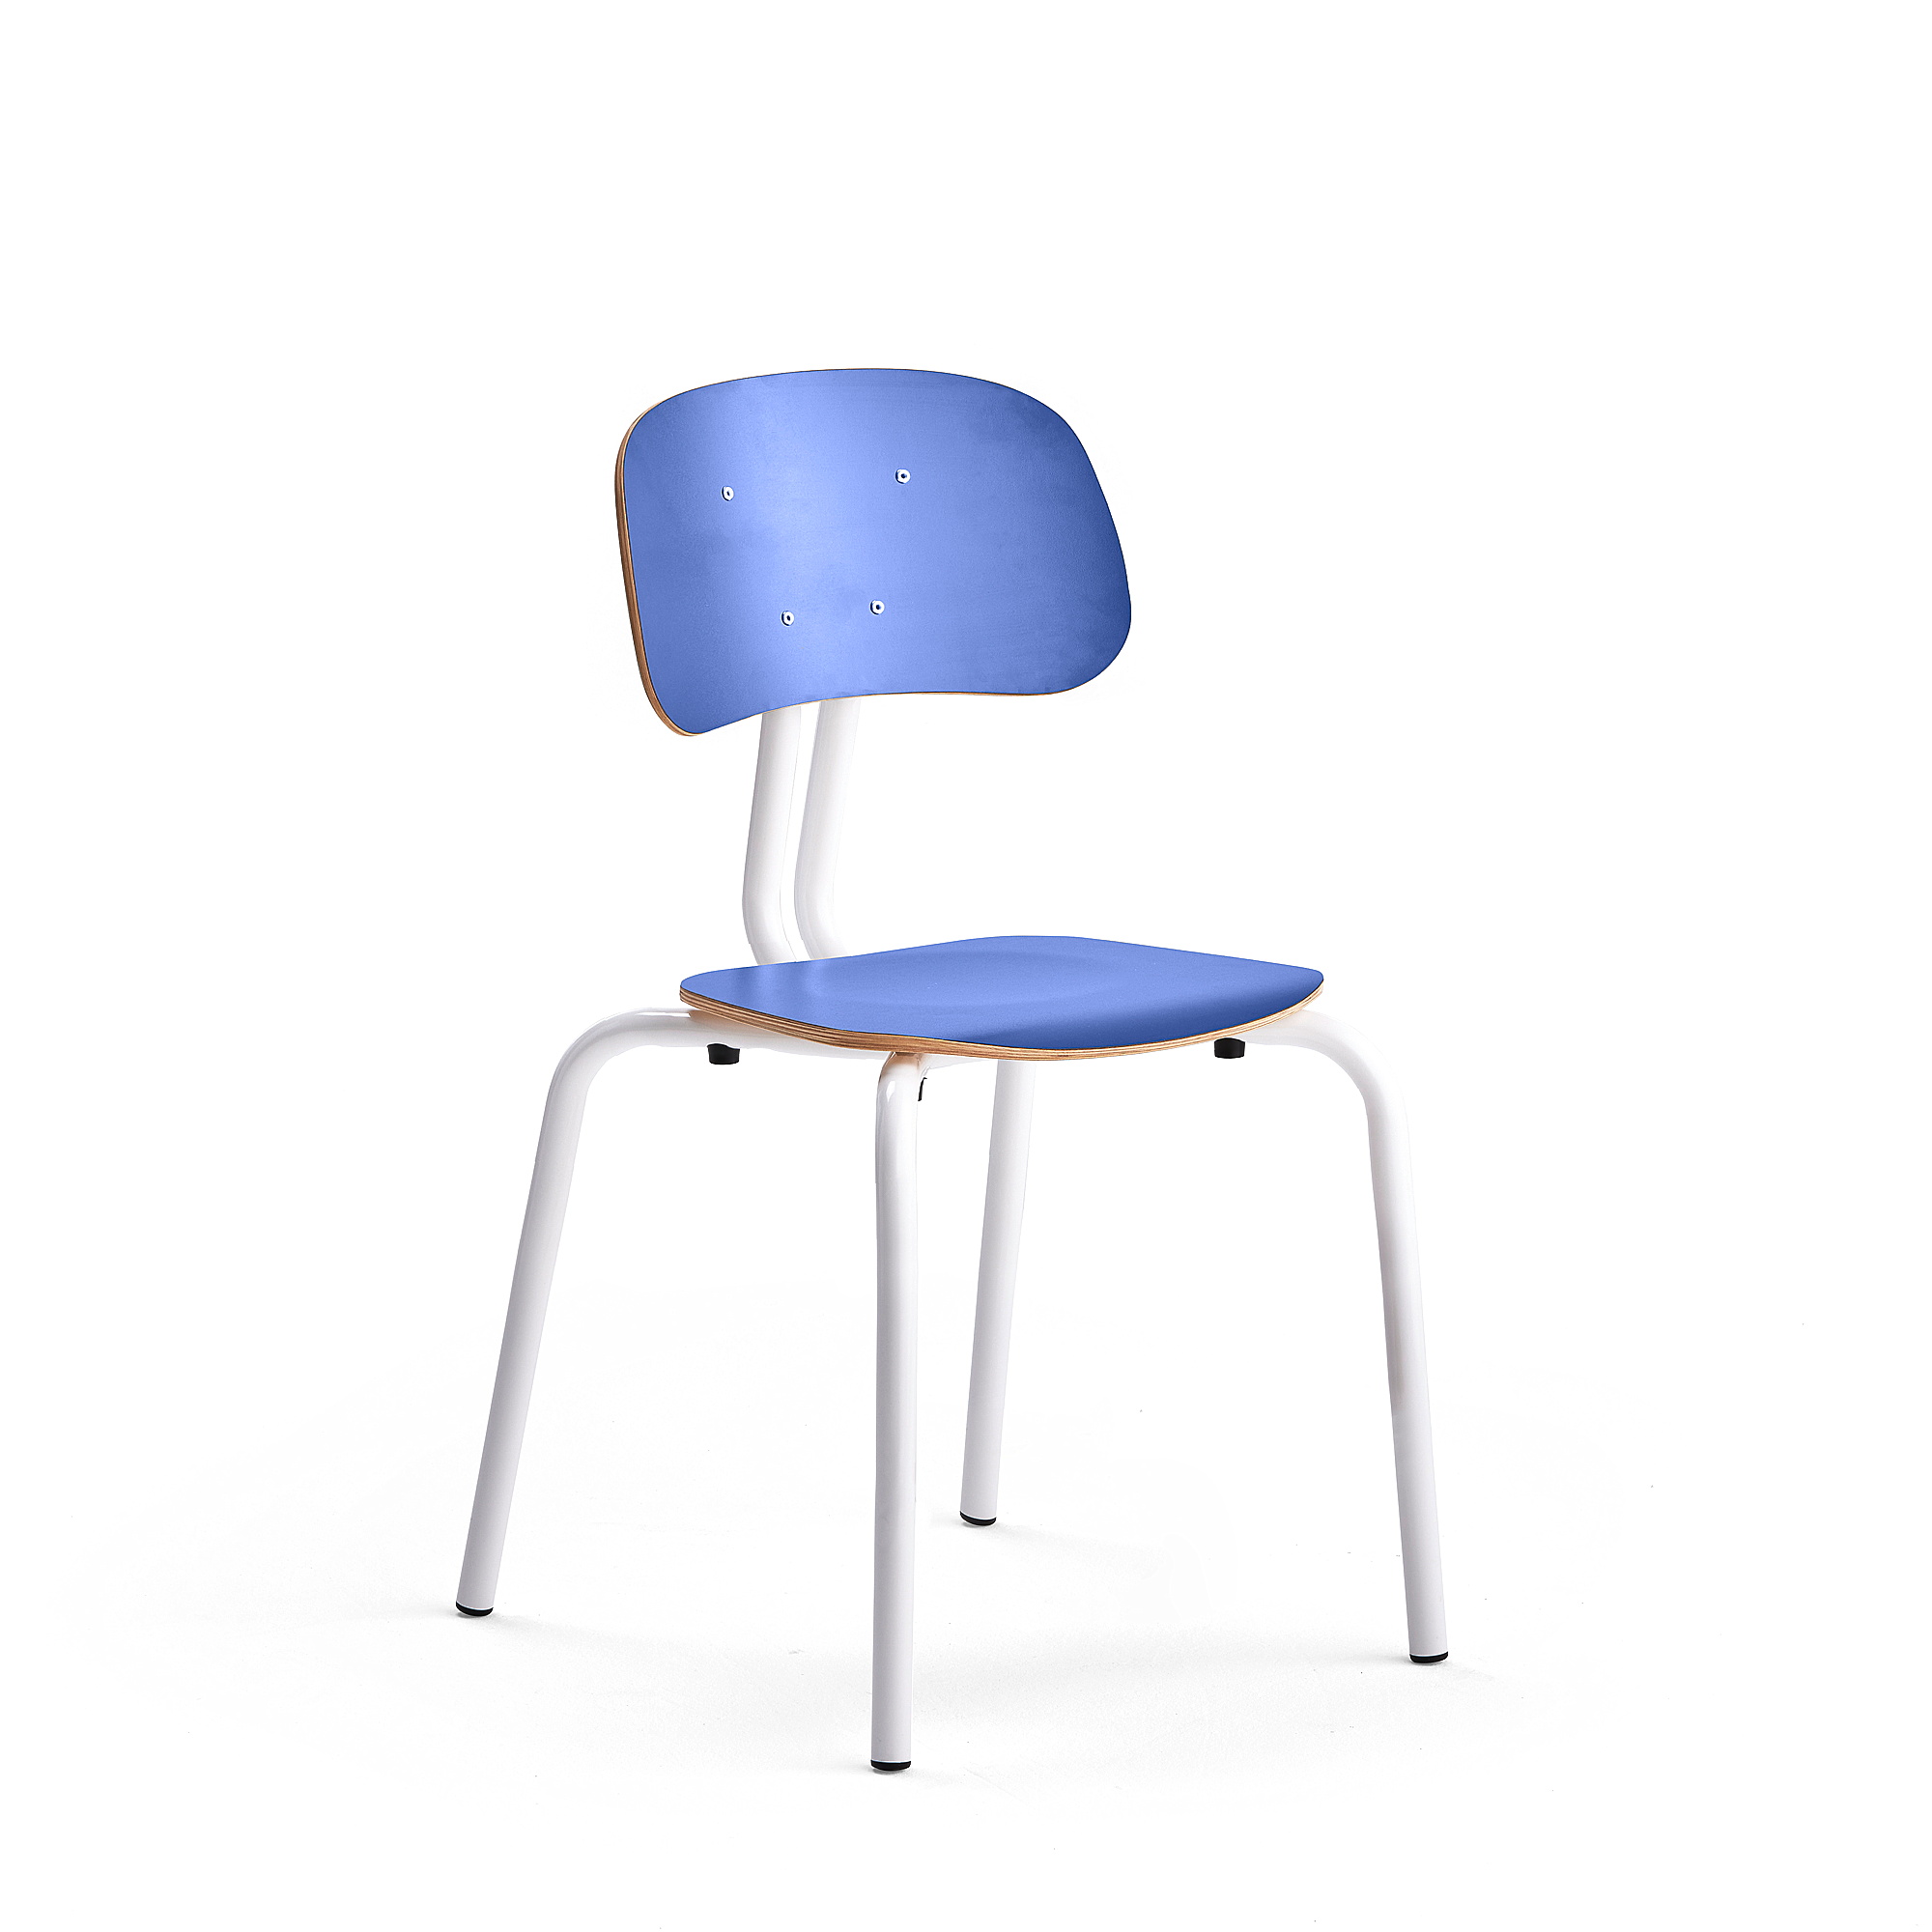 Školní židle YNGVE, 4 nohy, výška 460 mm, bílá/modrá